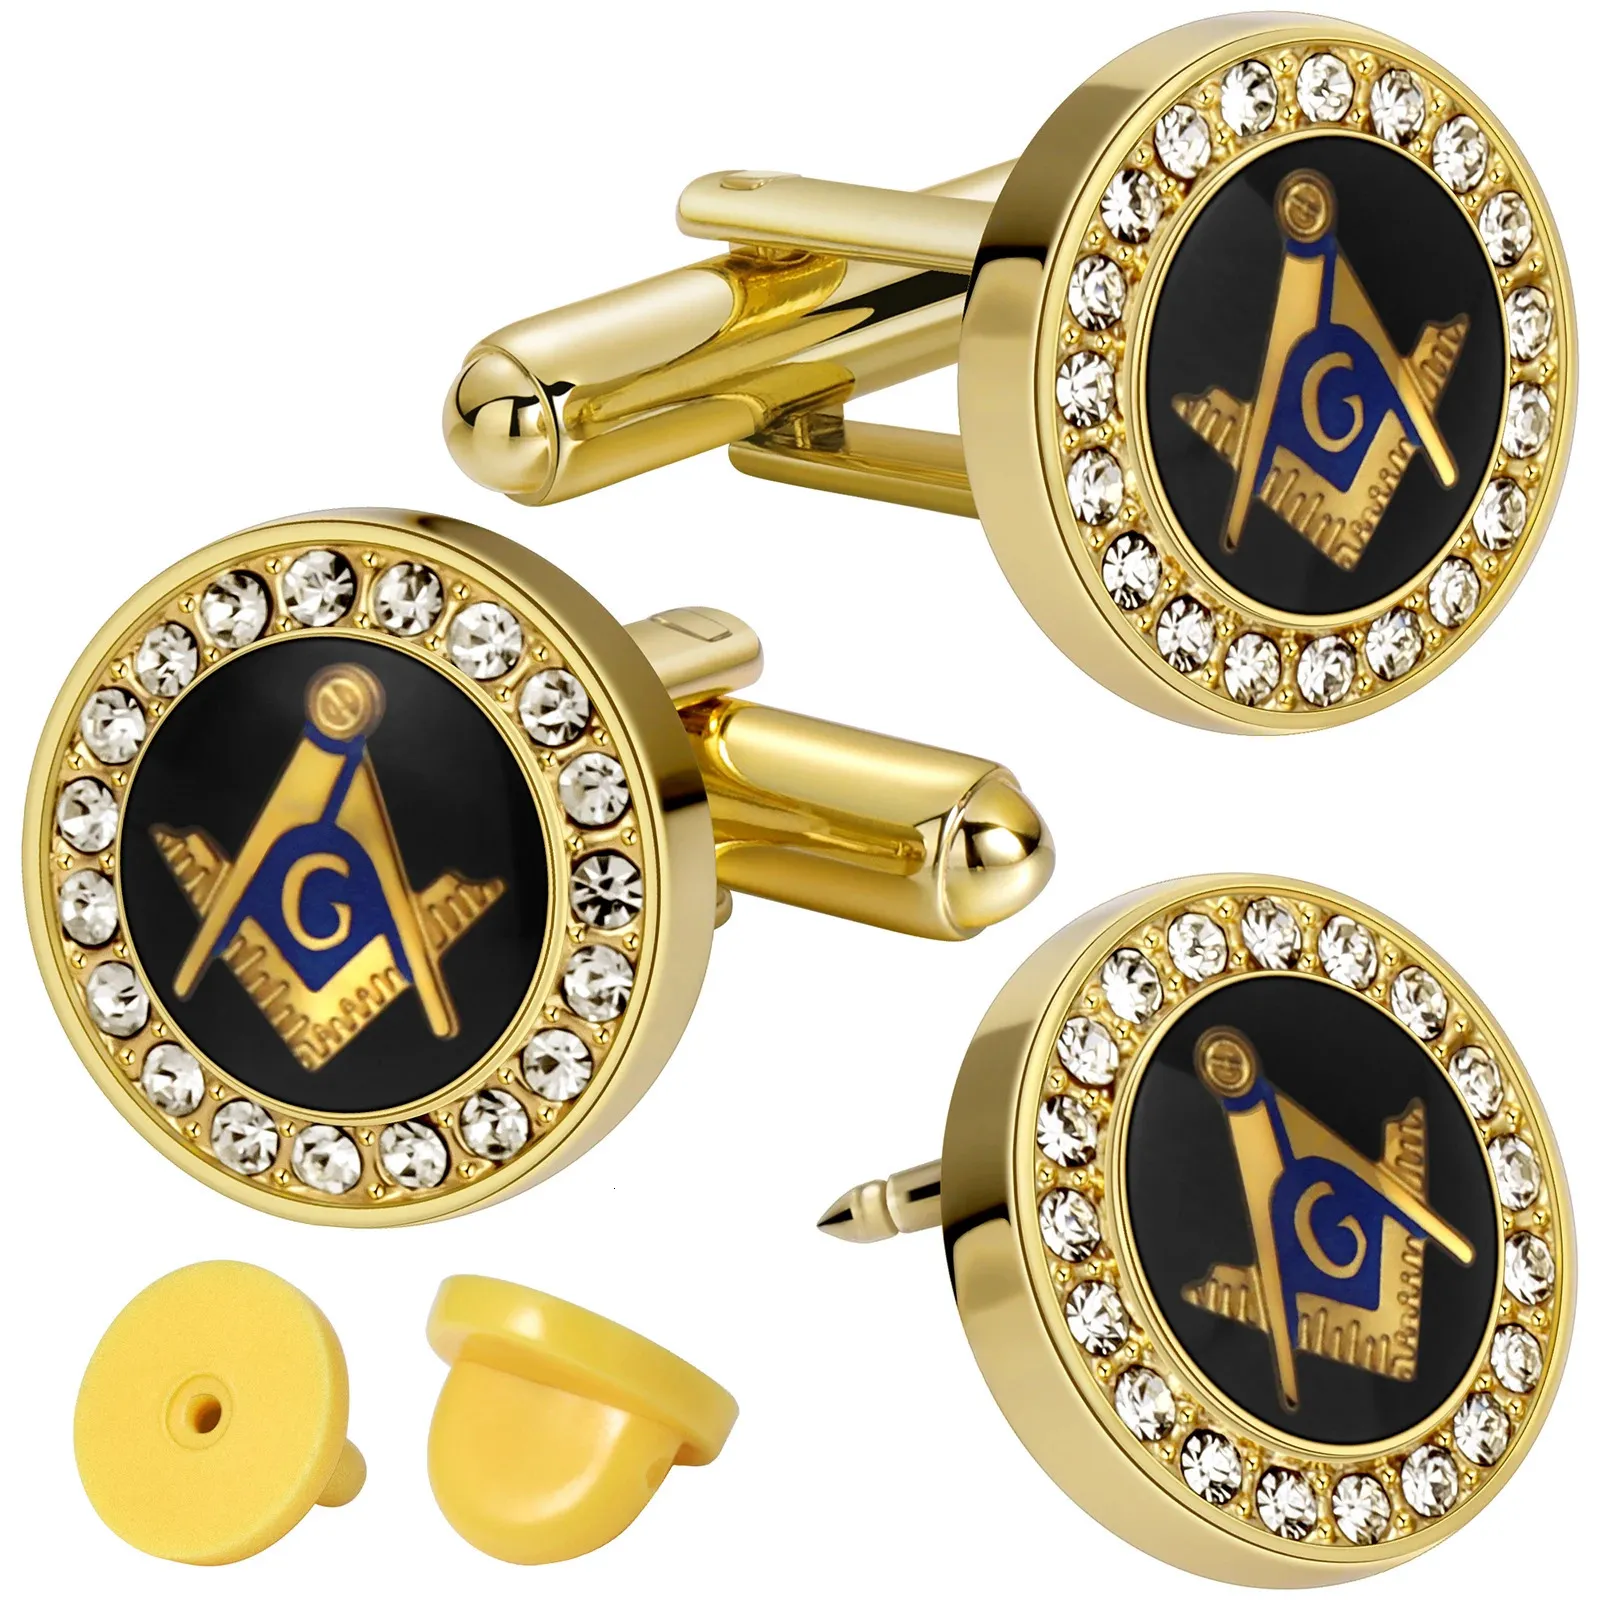 Freemason Masonic Tie Clip och manschettknappar för Mengift Box Packedmens smycken eller tillbehörsmasoniska gåvor för män. 240412